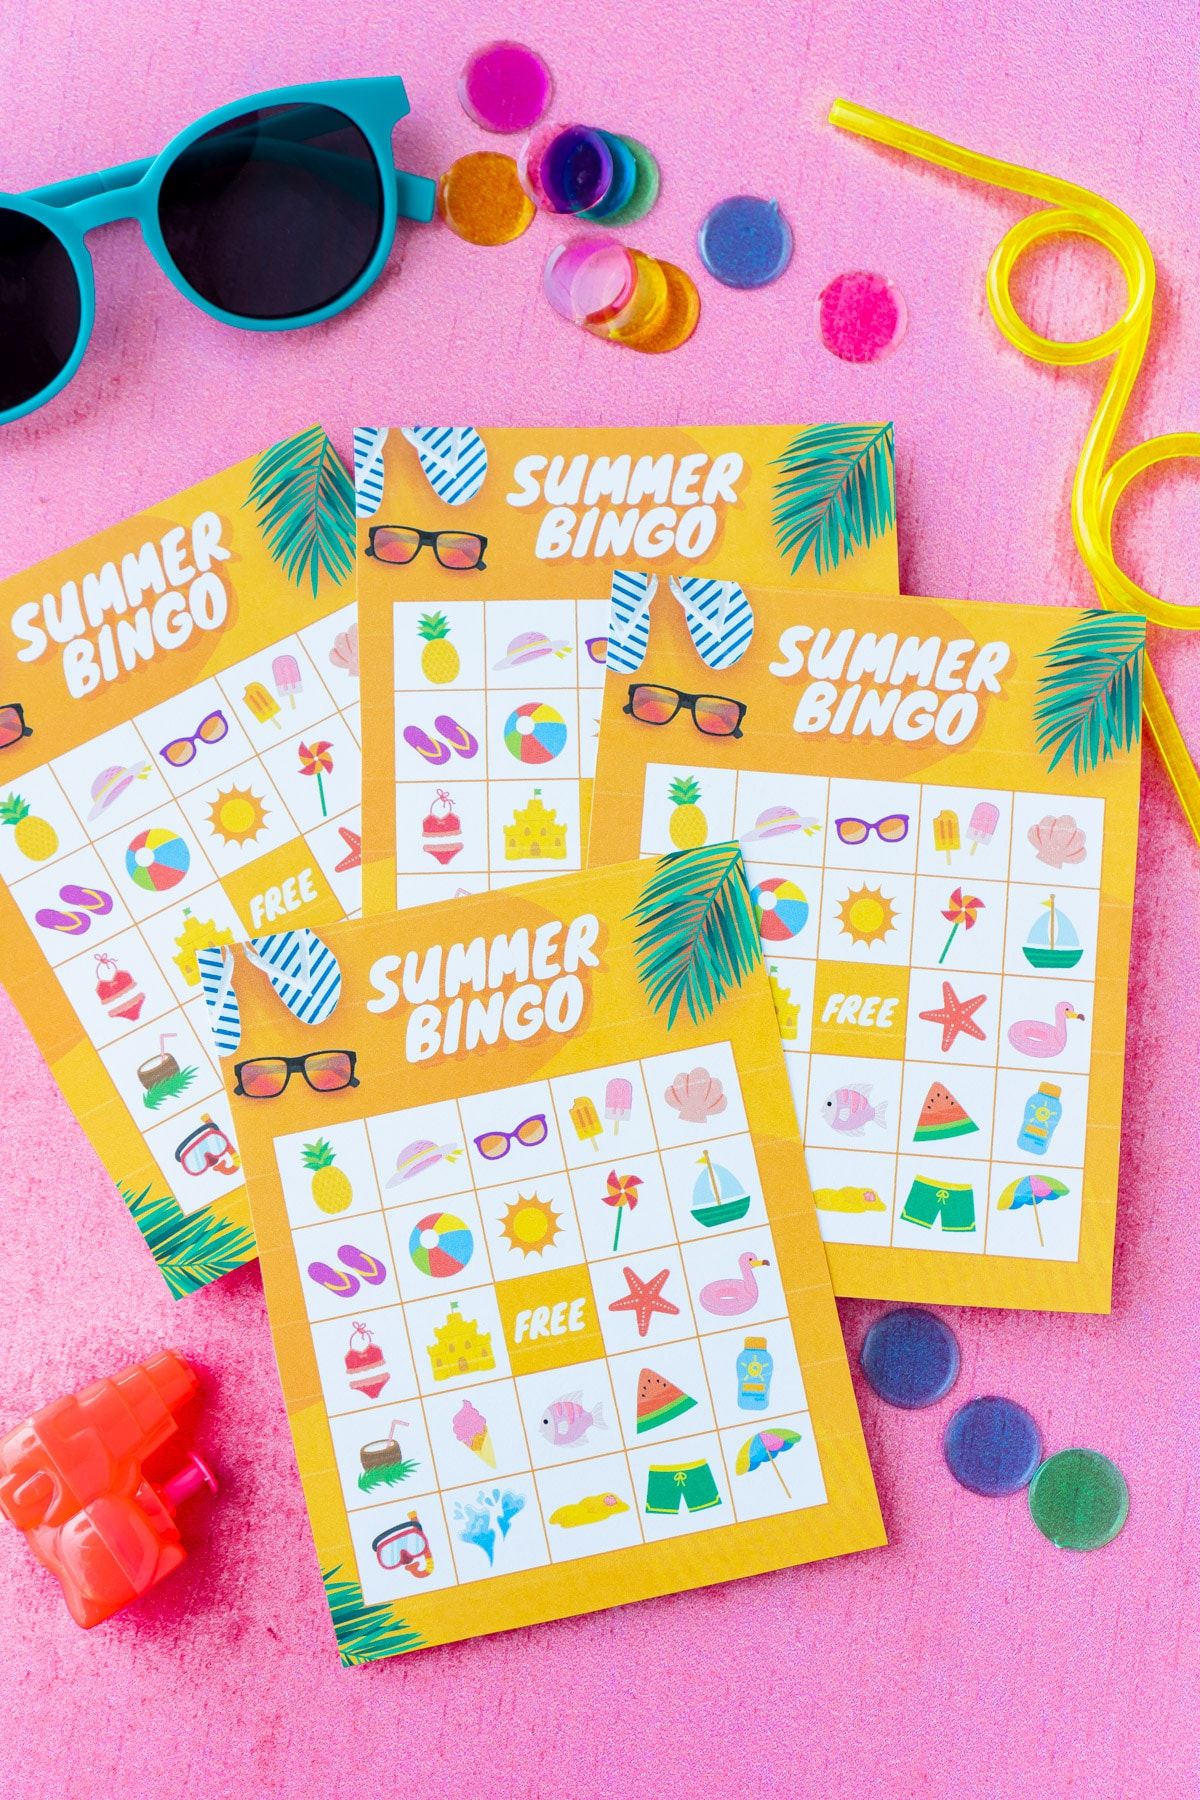 Bốn thẻ bingo mùa hè màu cam với kính râm và điểm đánh dấu bingo